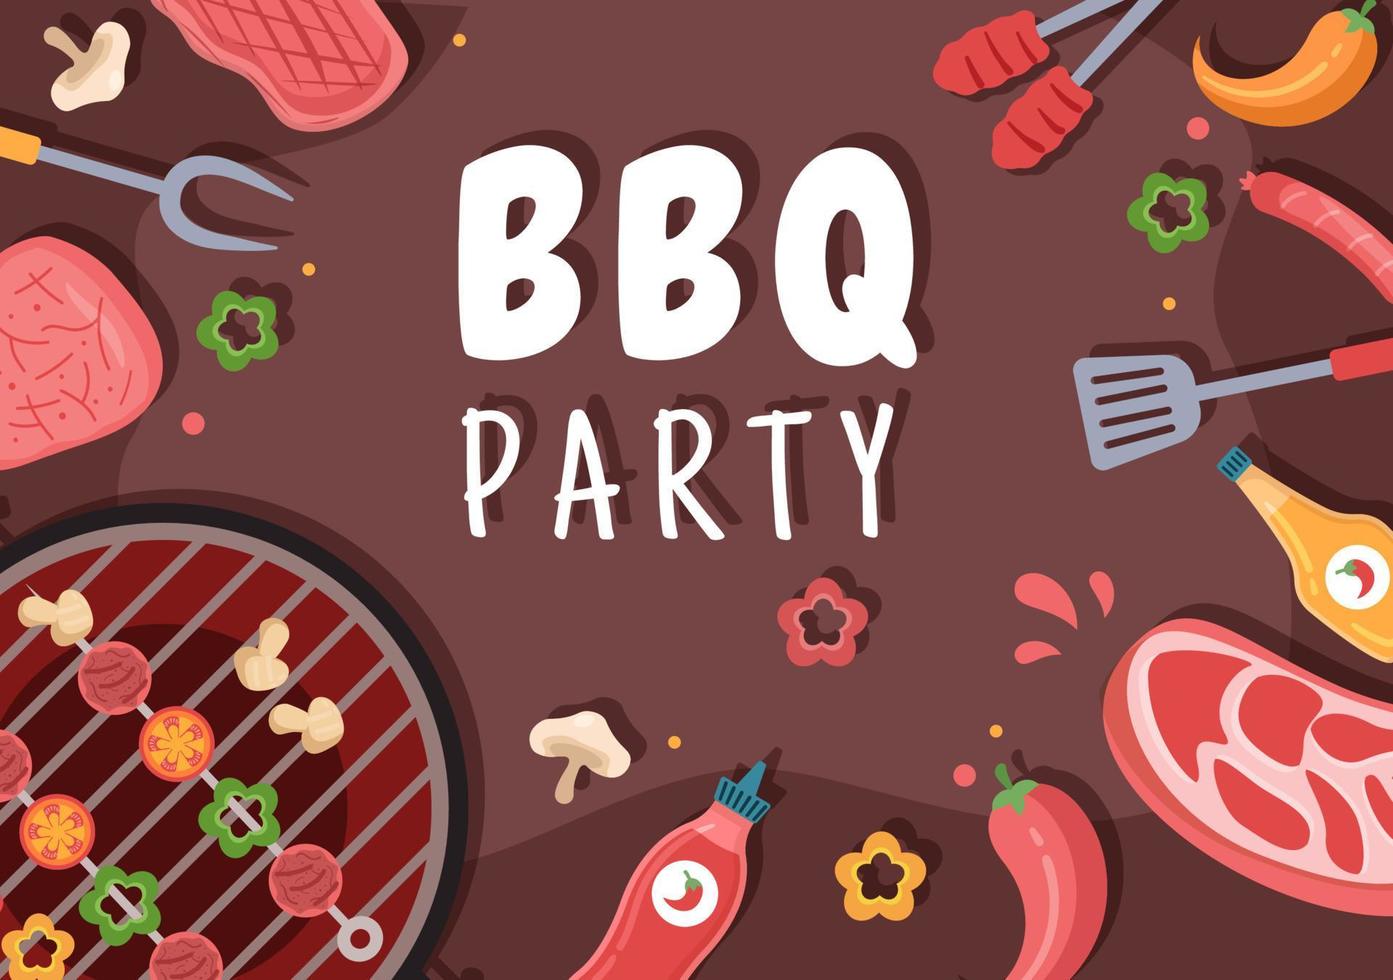 barbecue ou barbecue avec steaks sur grill, grille-pain, assiettes, saucisses, poulet et légumes en illustration de dessin animé de fond plat vecteur